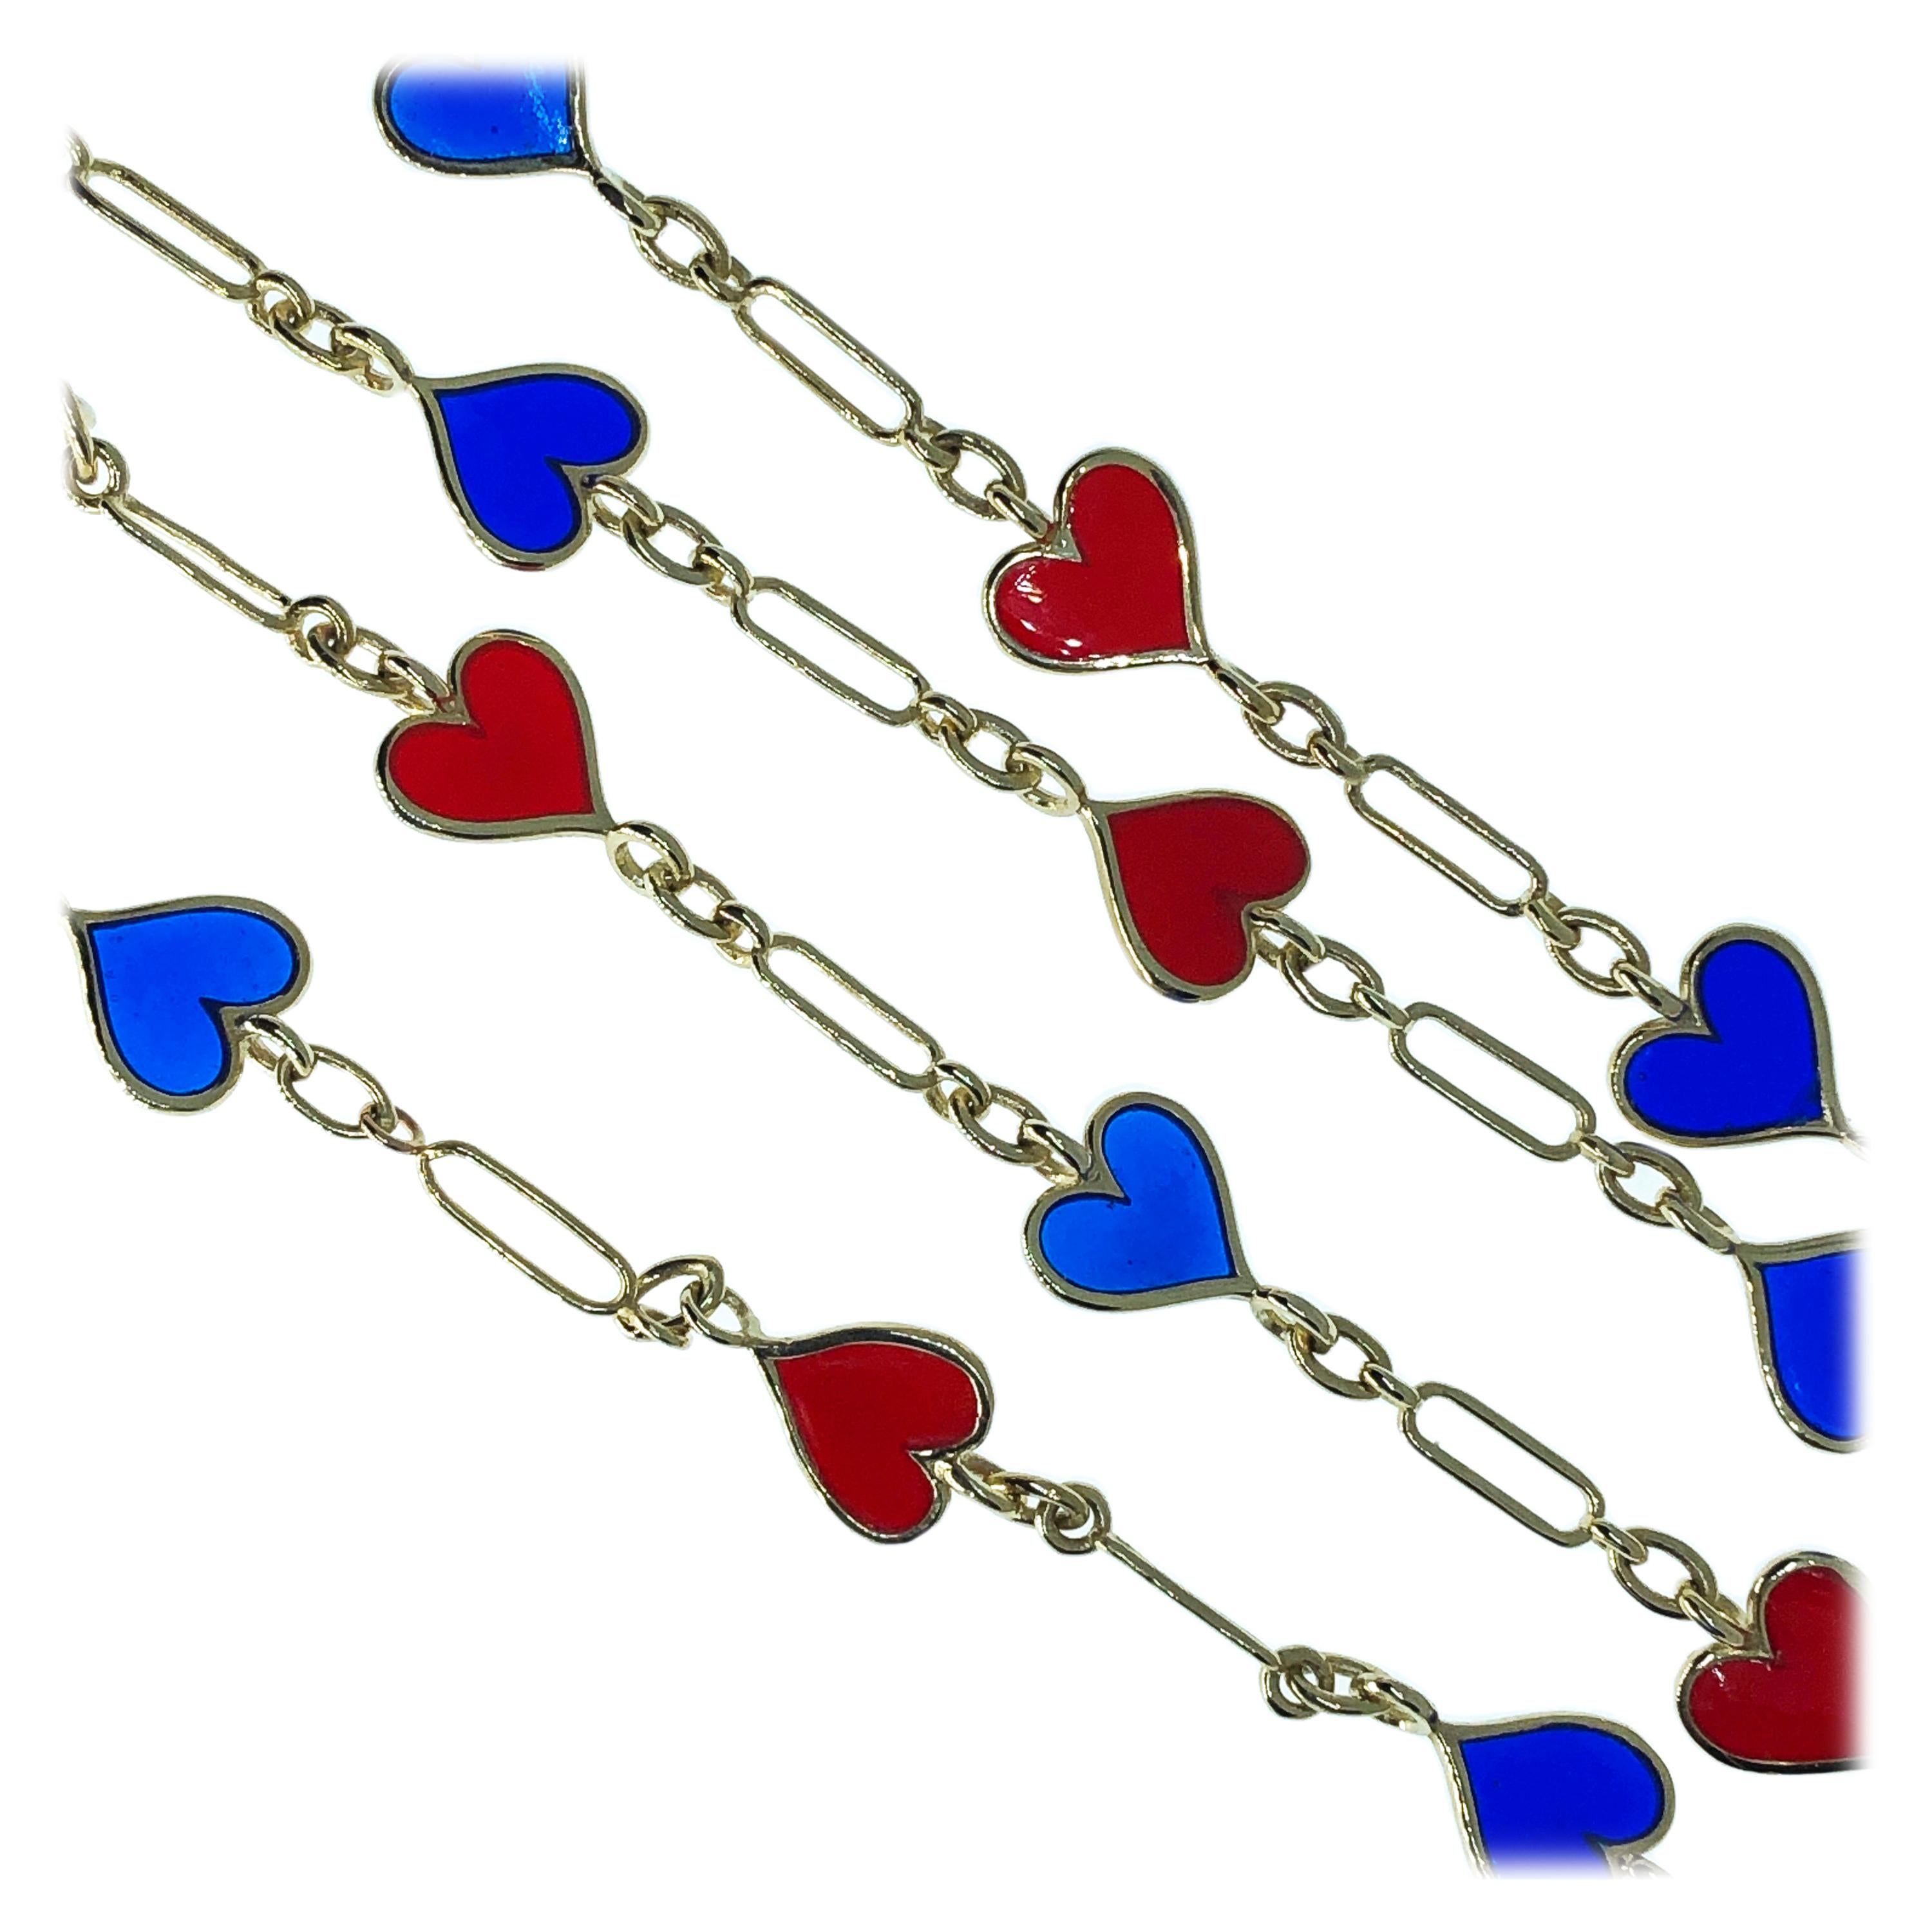 Schicke und doch zeitlose rote und marineblaue Plique-à-jour Hand emailliert Herzform lange Kette Halskette (31,4961 Zoll, 80cm), 28,9g, 0,865 Troy Ounces.
Dieses Stück ist ein wunderschönes Beispiel für italienische Handwerkskunst und Kreativität: